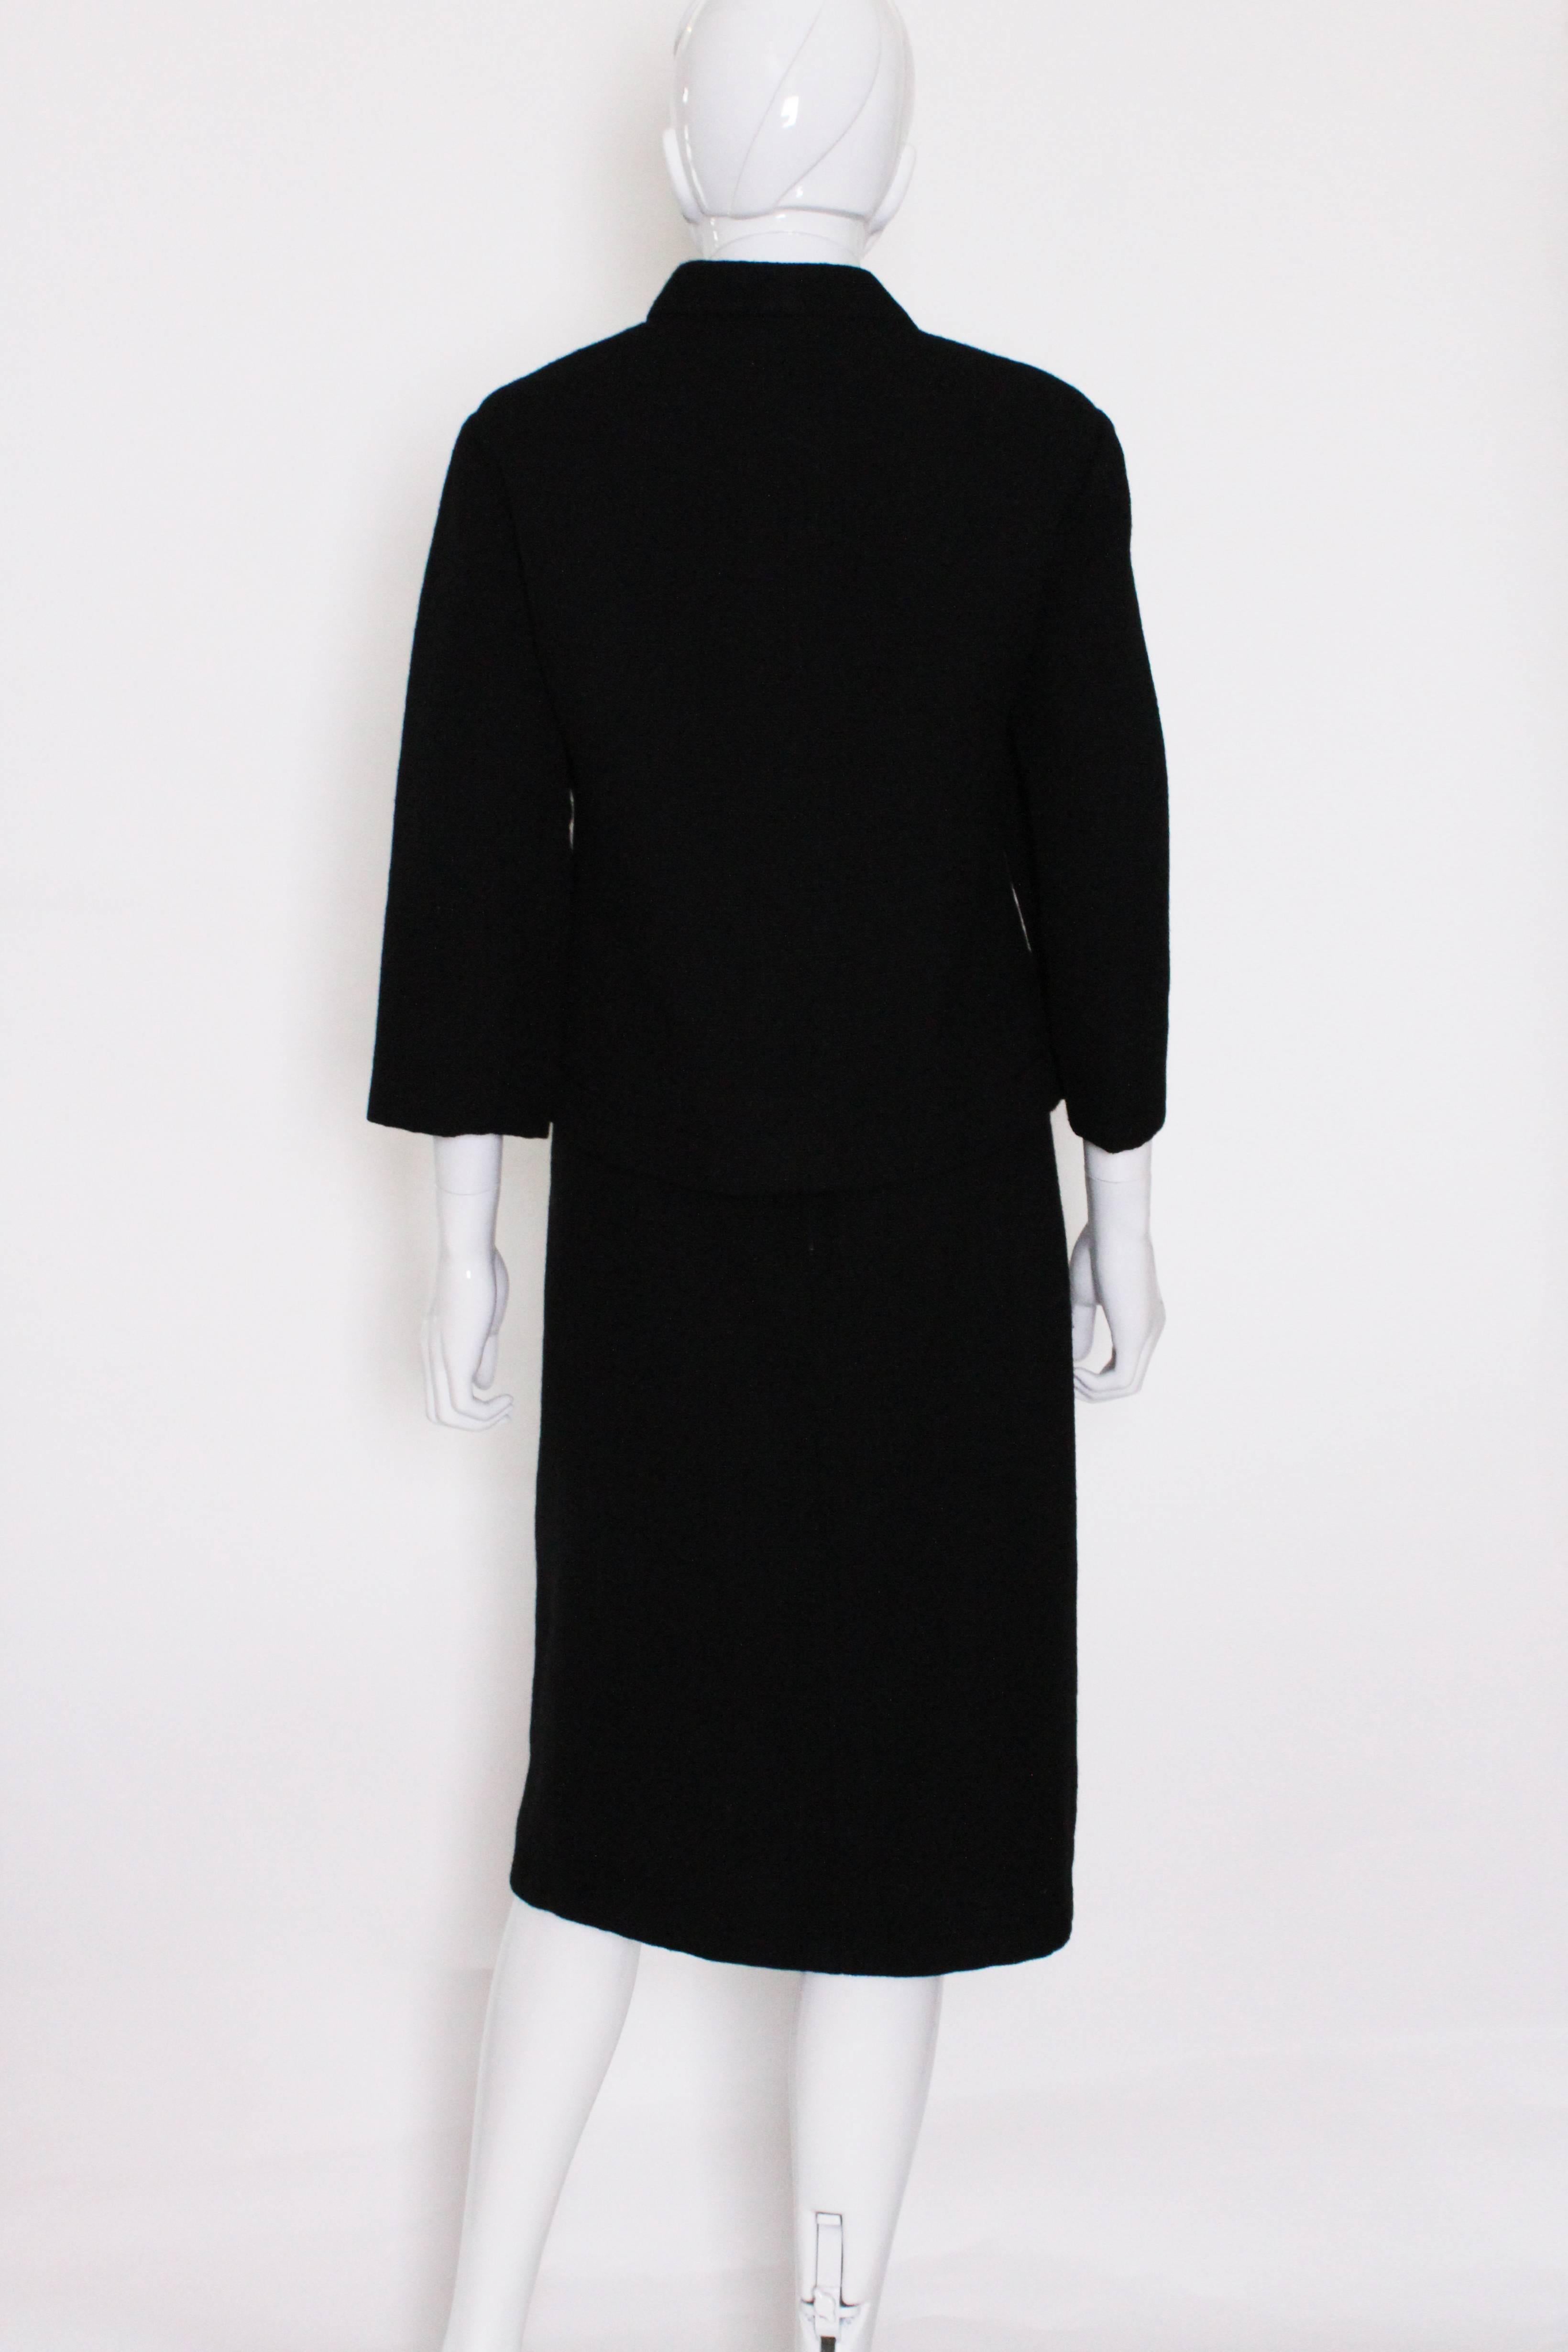 Vintage Christian Dior Black Skirt Suit at 1stDibs